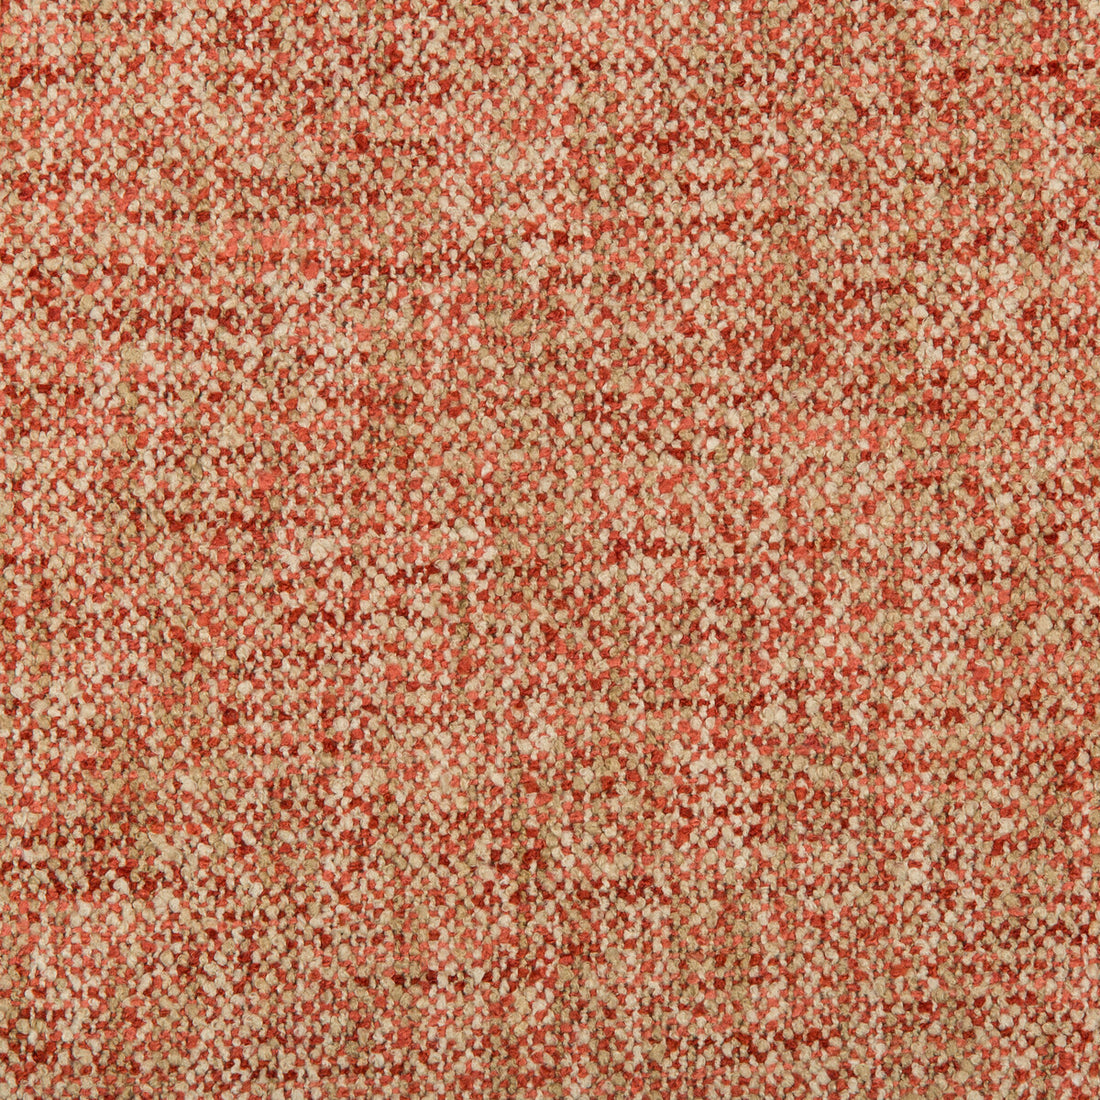 Kravet Basics fabric in 35455-1612 color - pattern 35455.1612.0 - by Kravet Basics